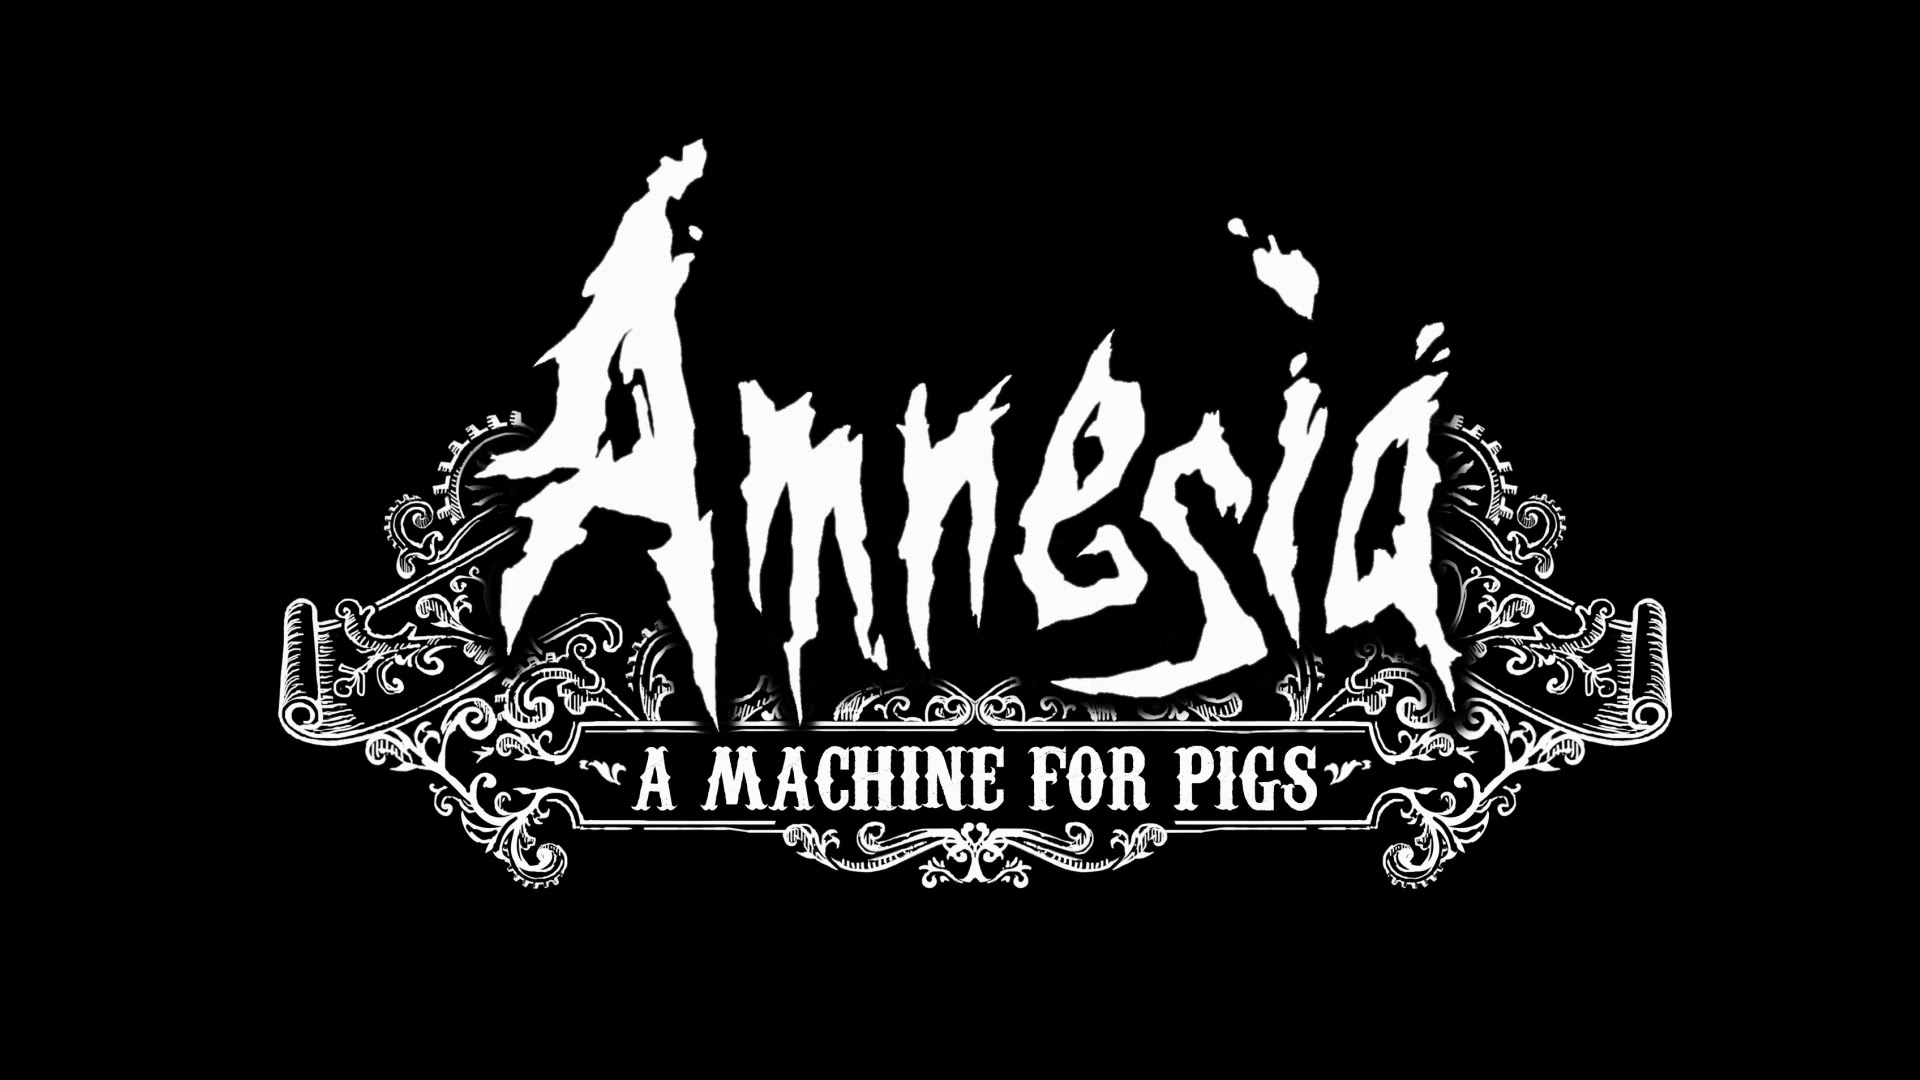 Una partida al billar? Amnesia: A machine for pigs #2 de Jordi de Sant Jordi